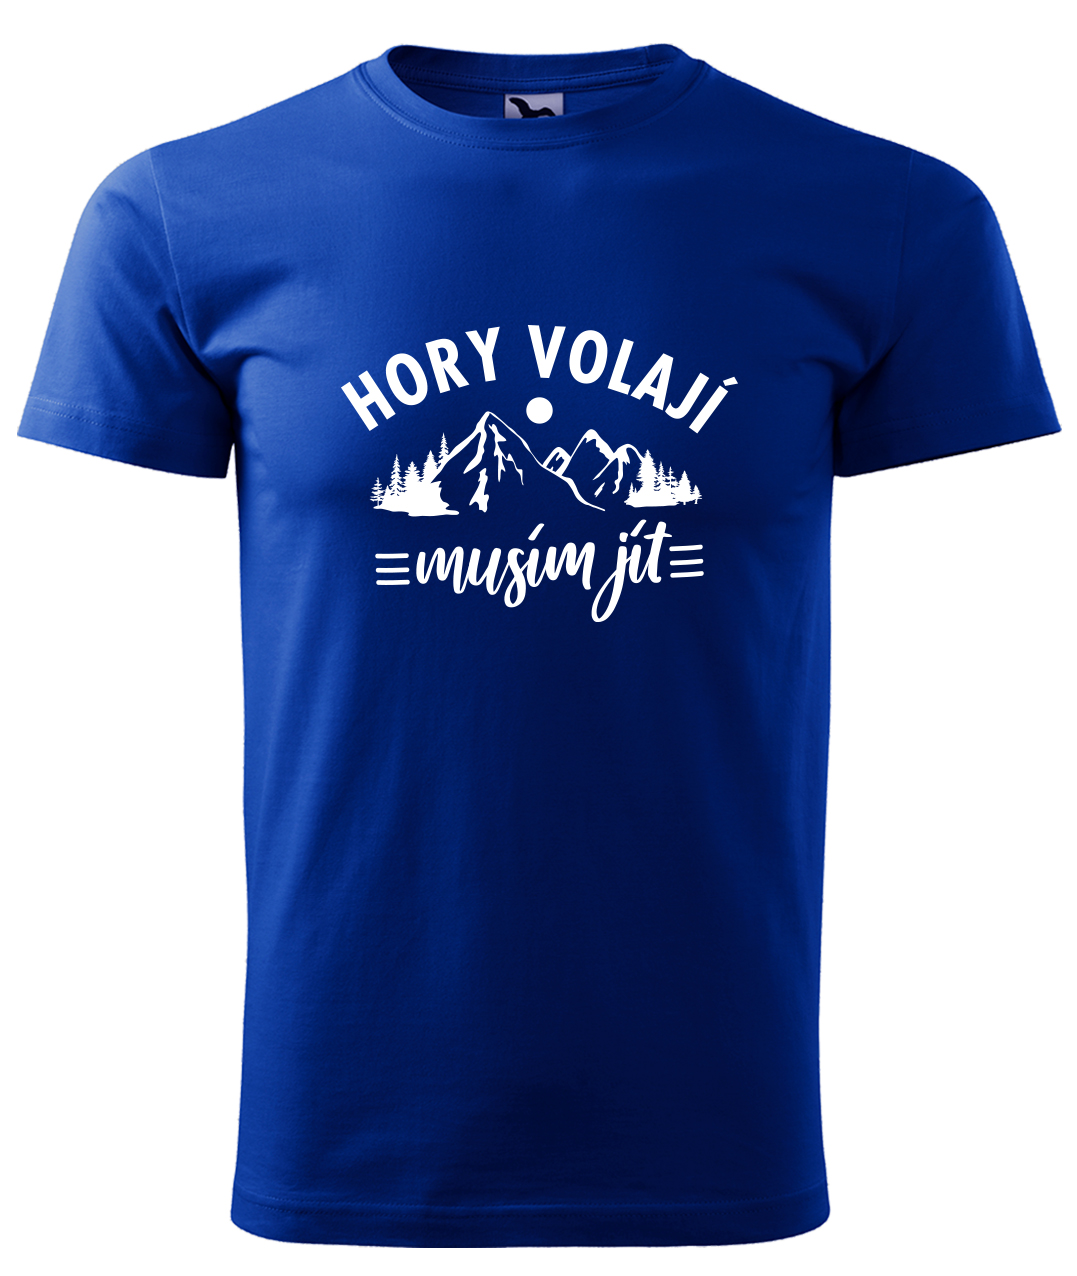 Dětské tričko na hory - Hory volají, musím jít Velikost: 4 roky / 110 cm, Barva: Královská modrá (05), Délka rukávu: Krátký rukáv